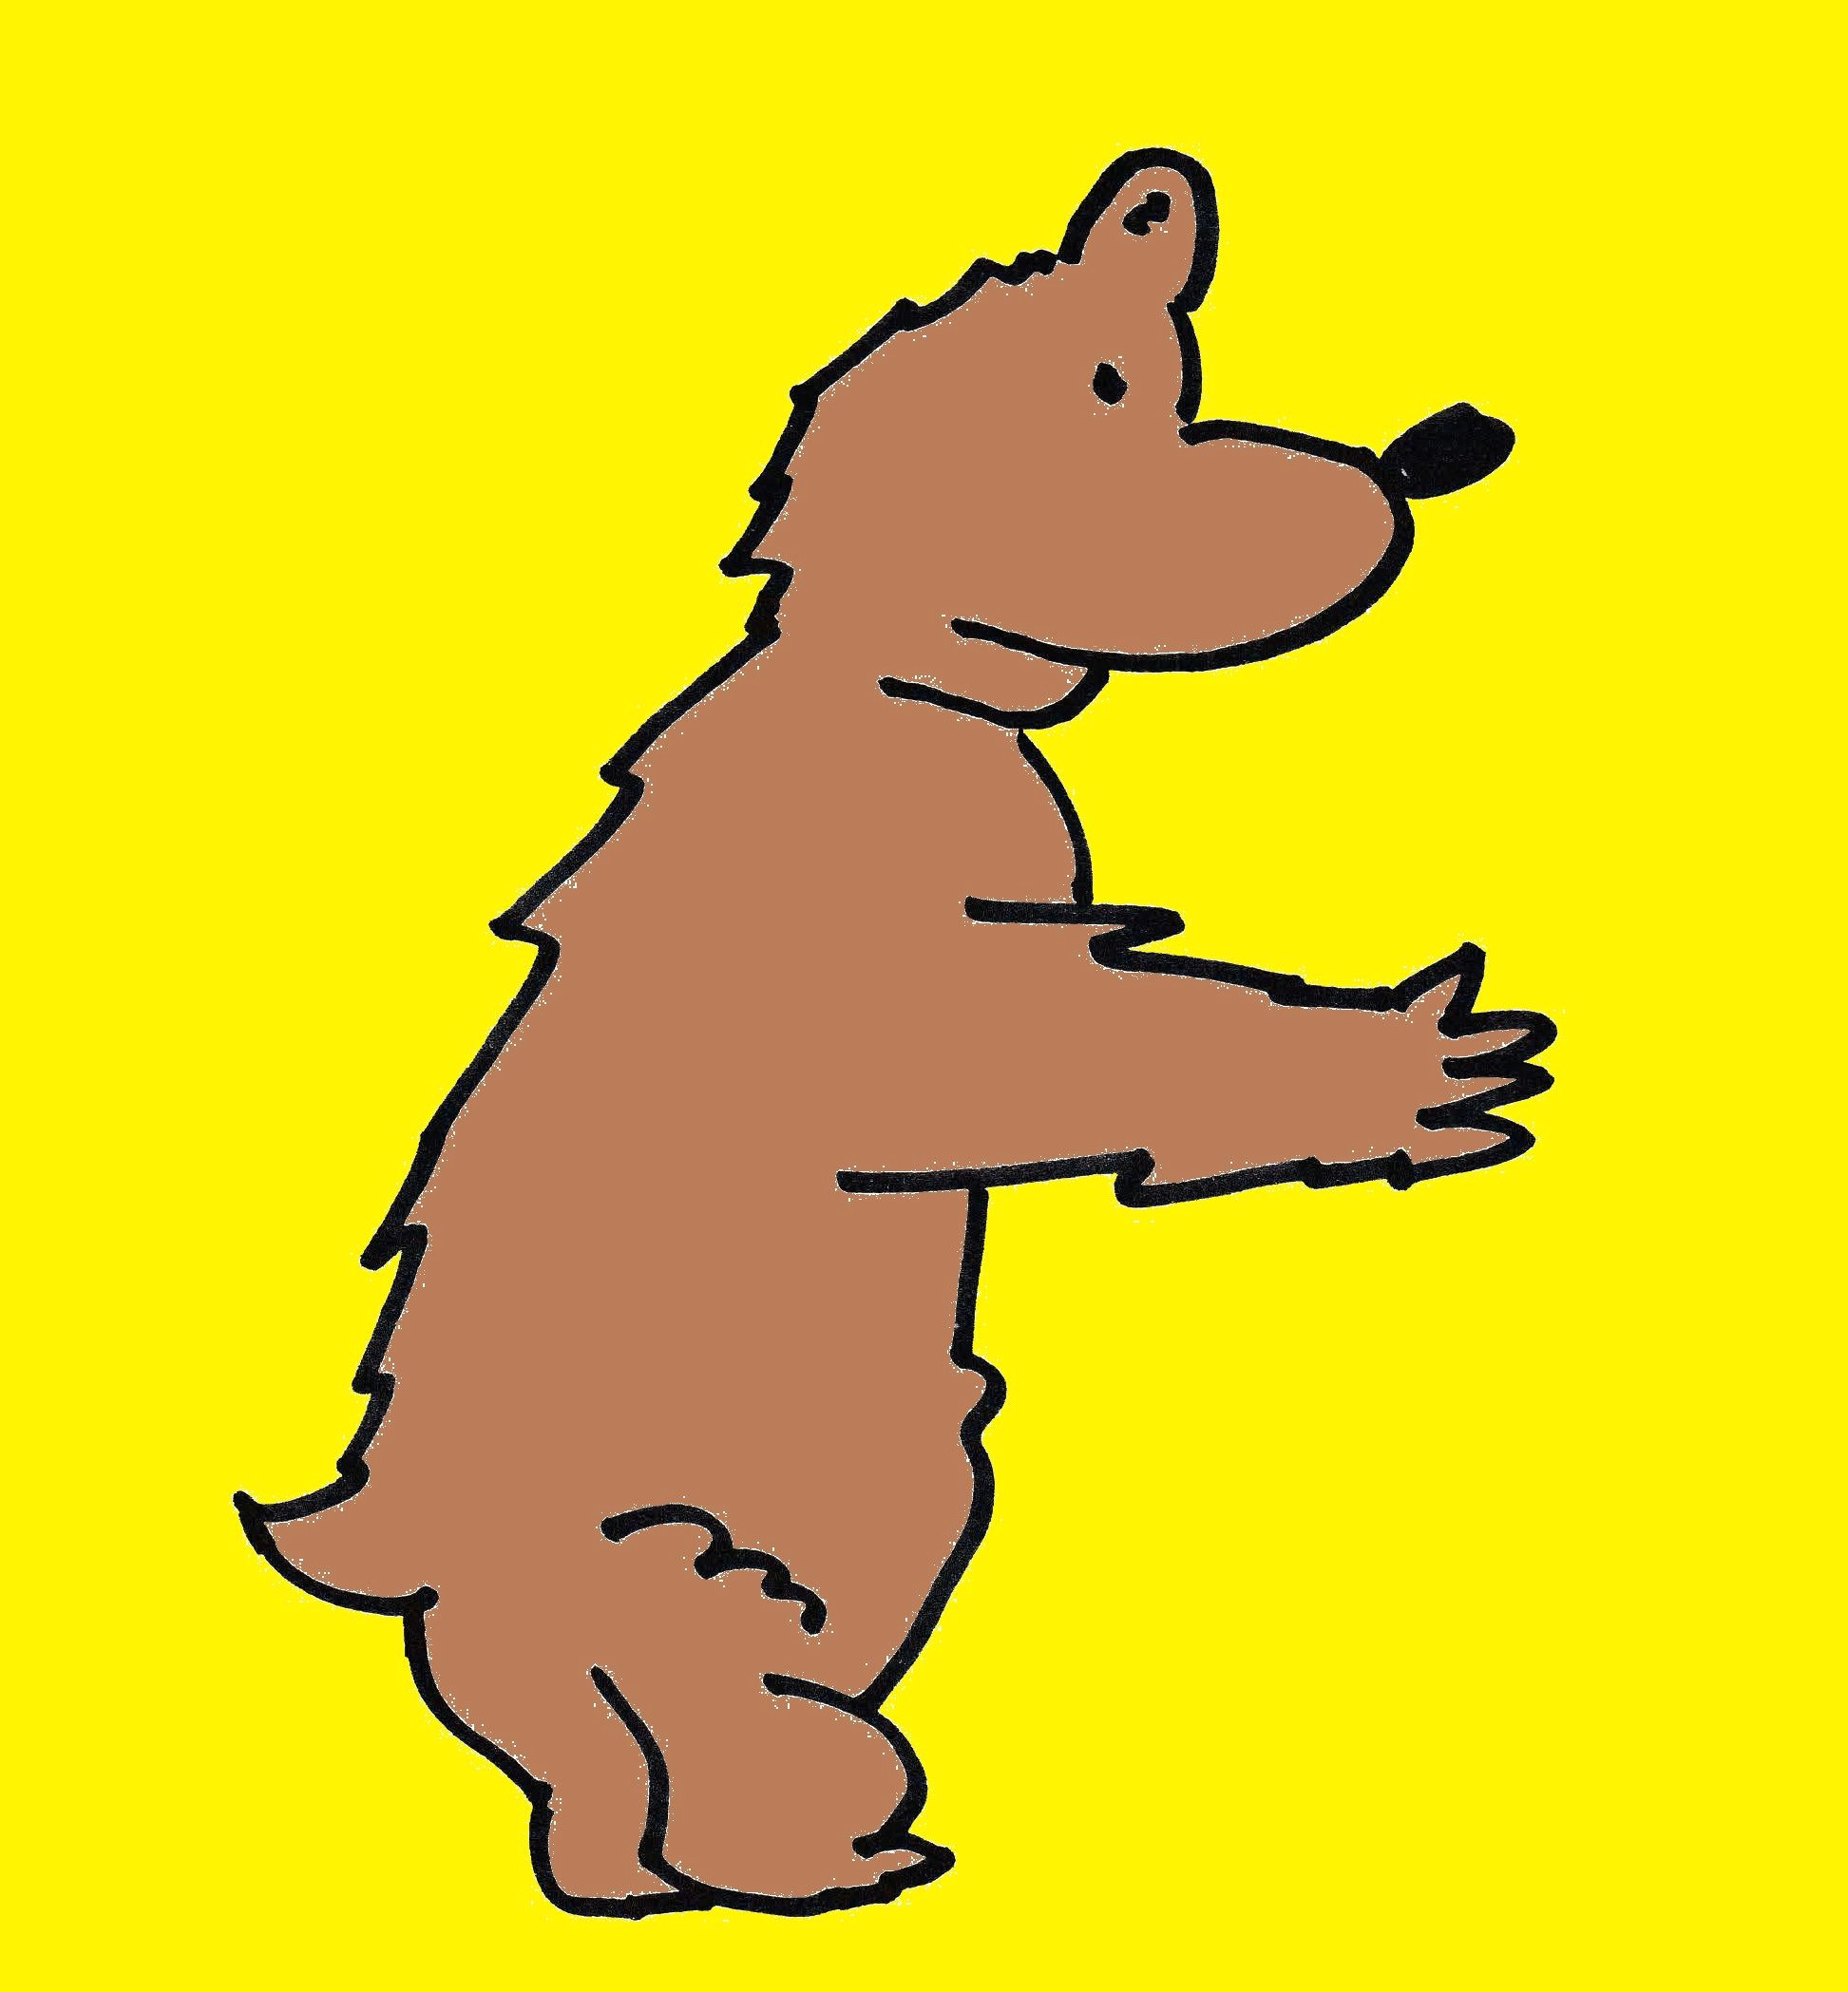 Drawing A Cartoon Bear Cartoon Bear Cartoon Drawing Cartoon Drawing Cartoon Character